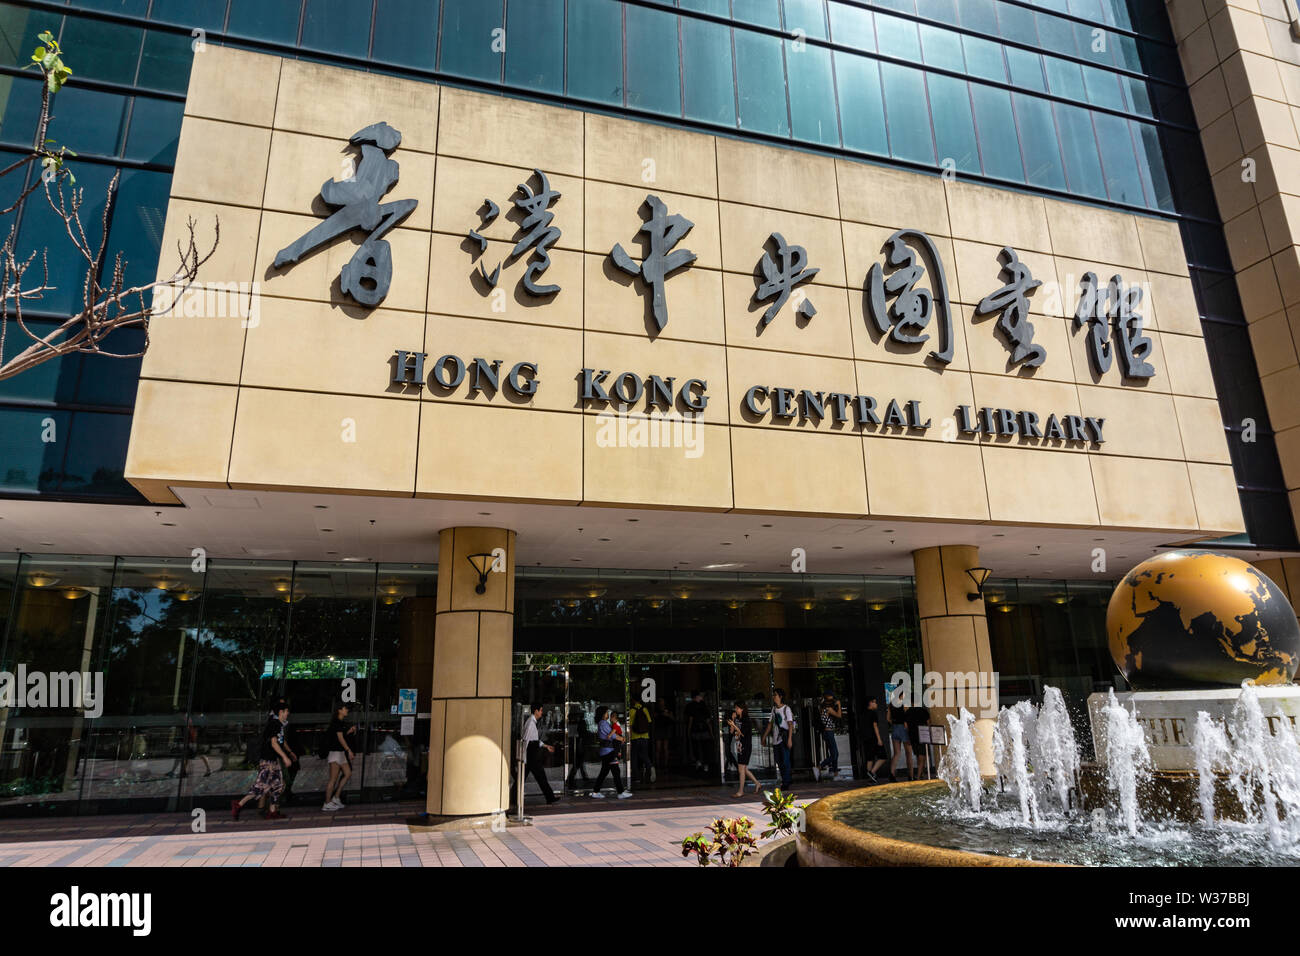 Facade exterior of Hong Kong Central Library Stock Photo